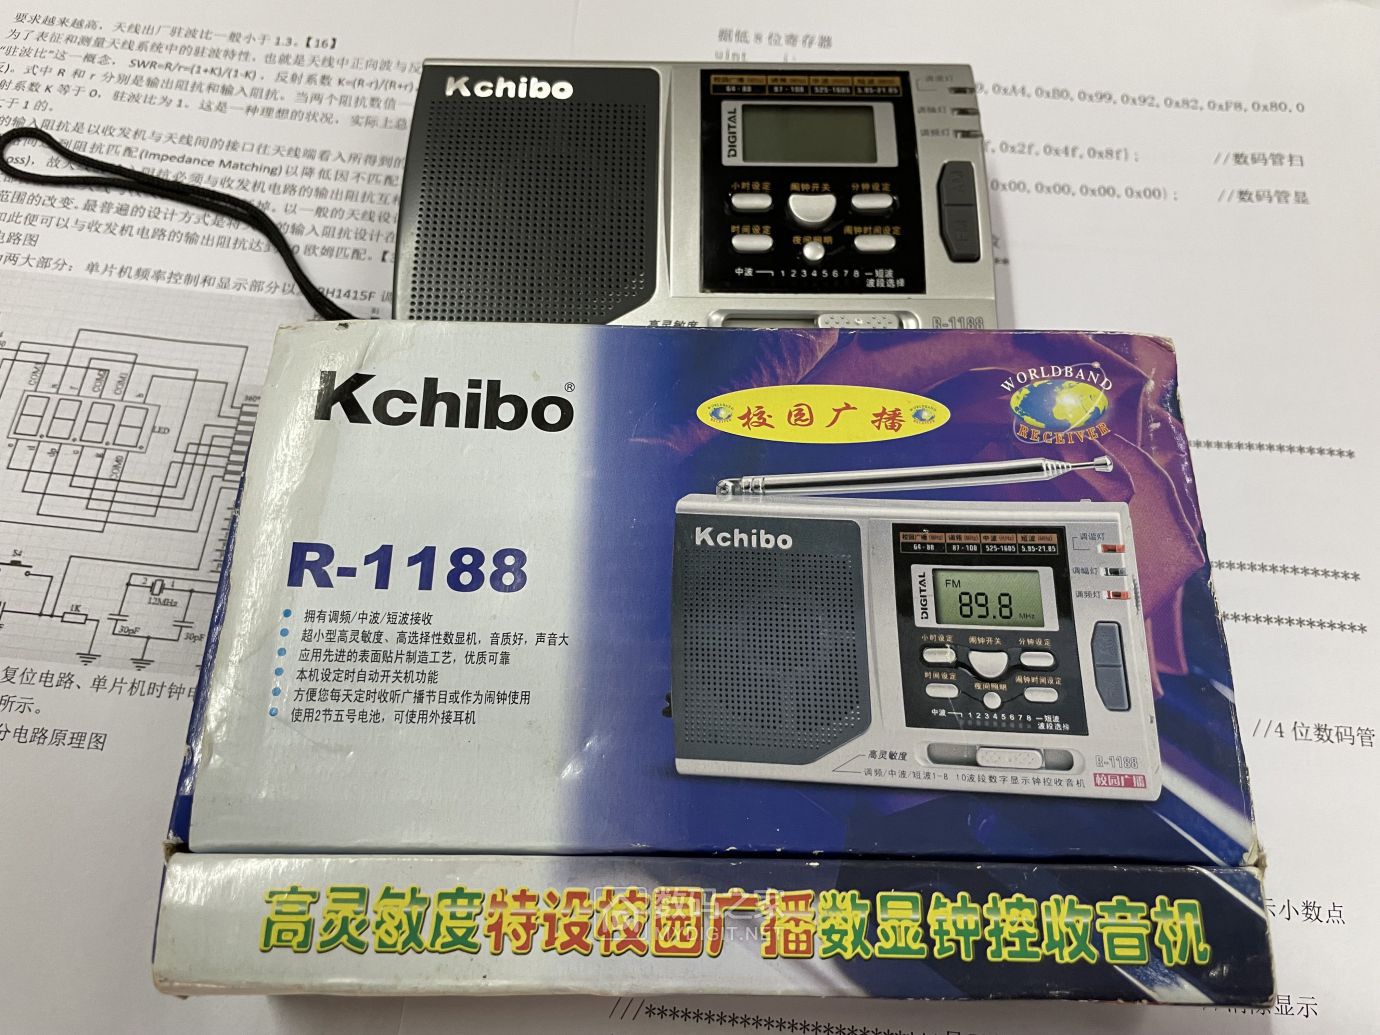 Kchibo R-1188